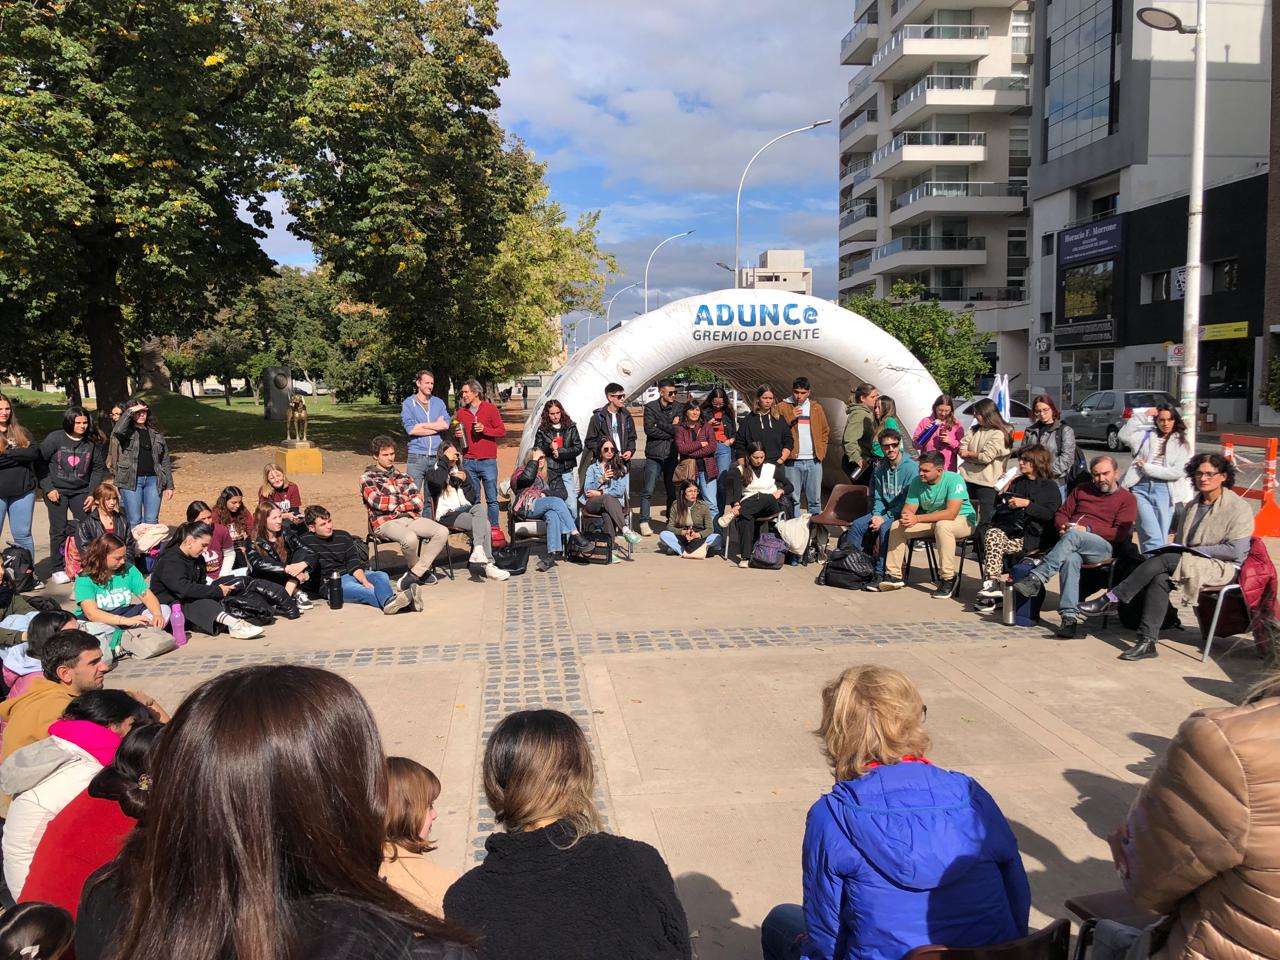 Unicen: Clases públicas en la Plaza Independencia en rechazo al ajuste en las universidades